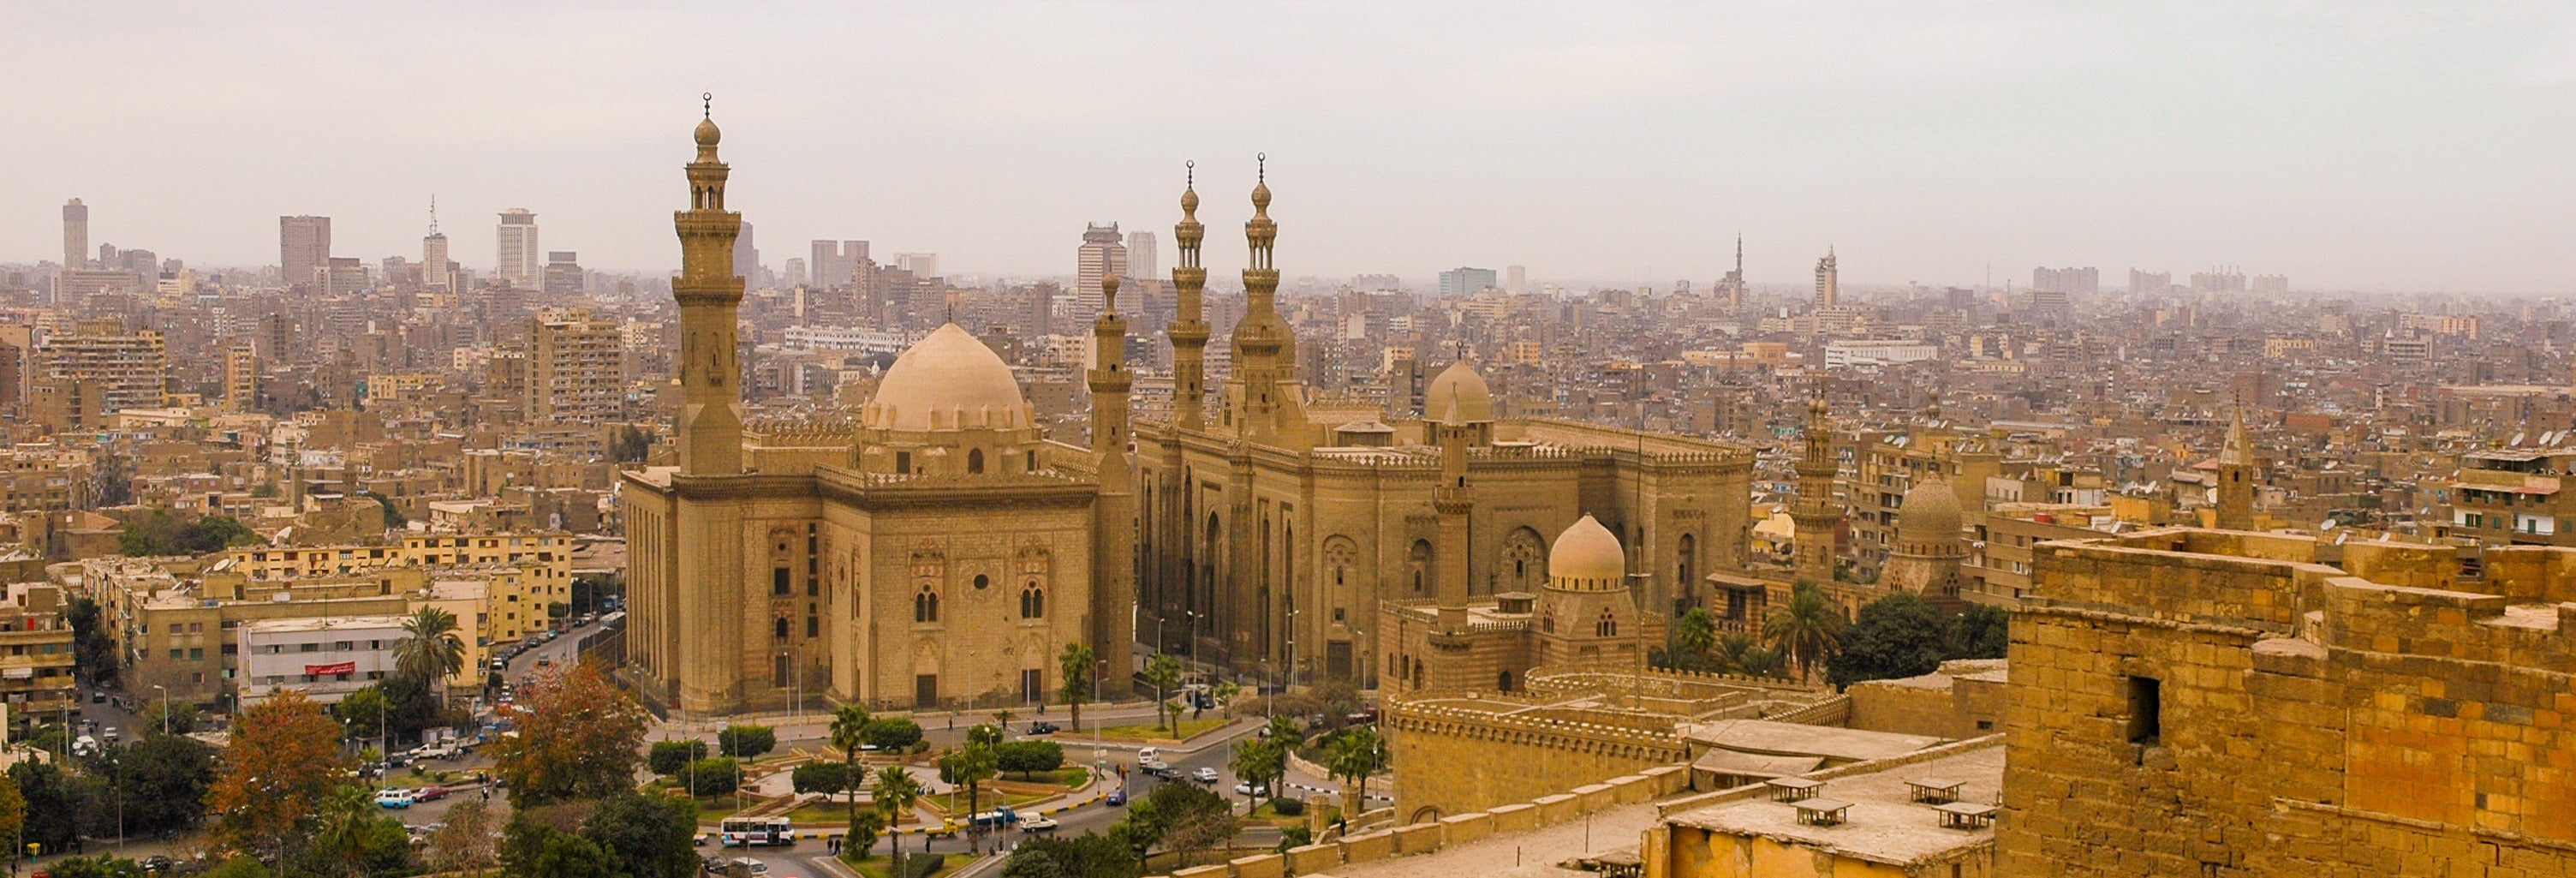 Visite historique dans Le Caire du calife fatimide